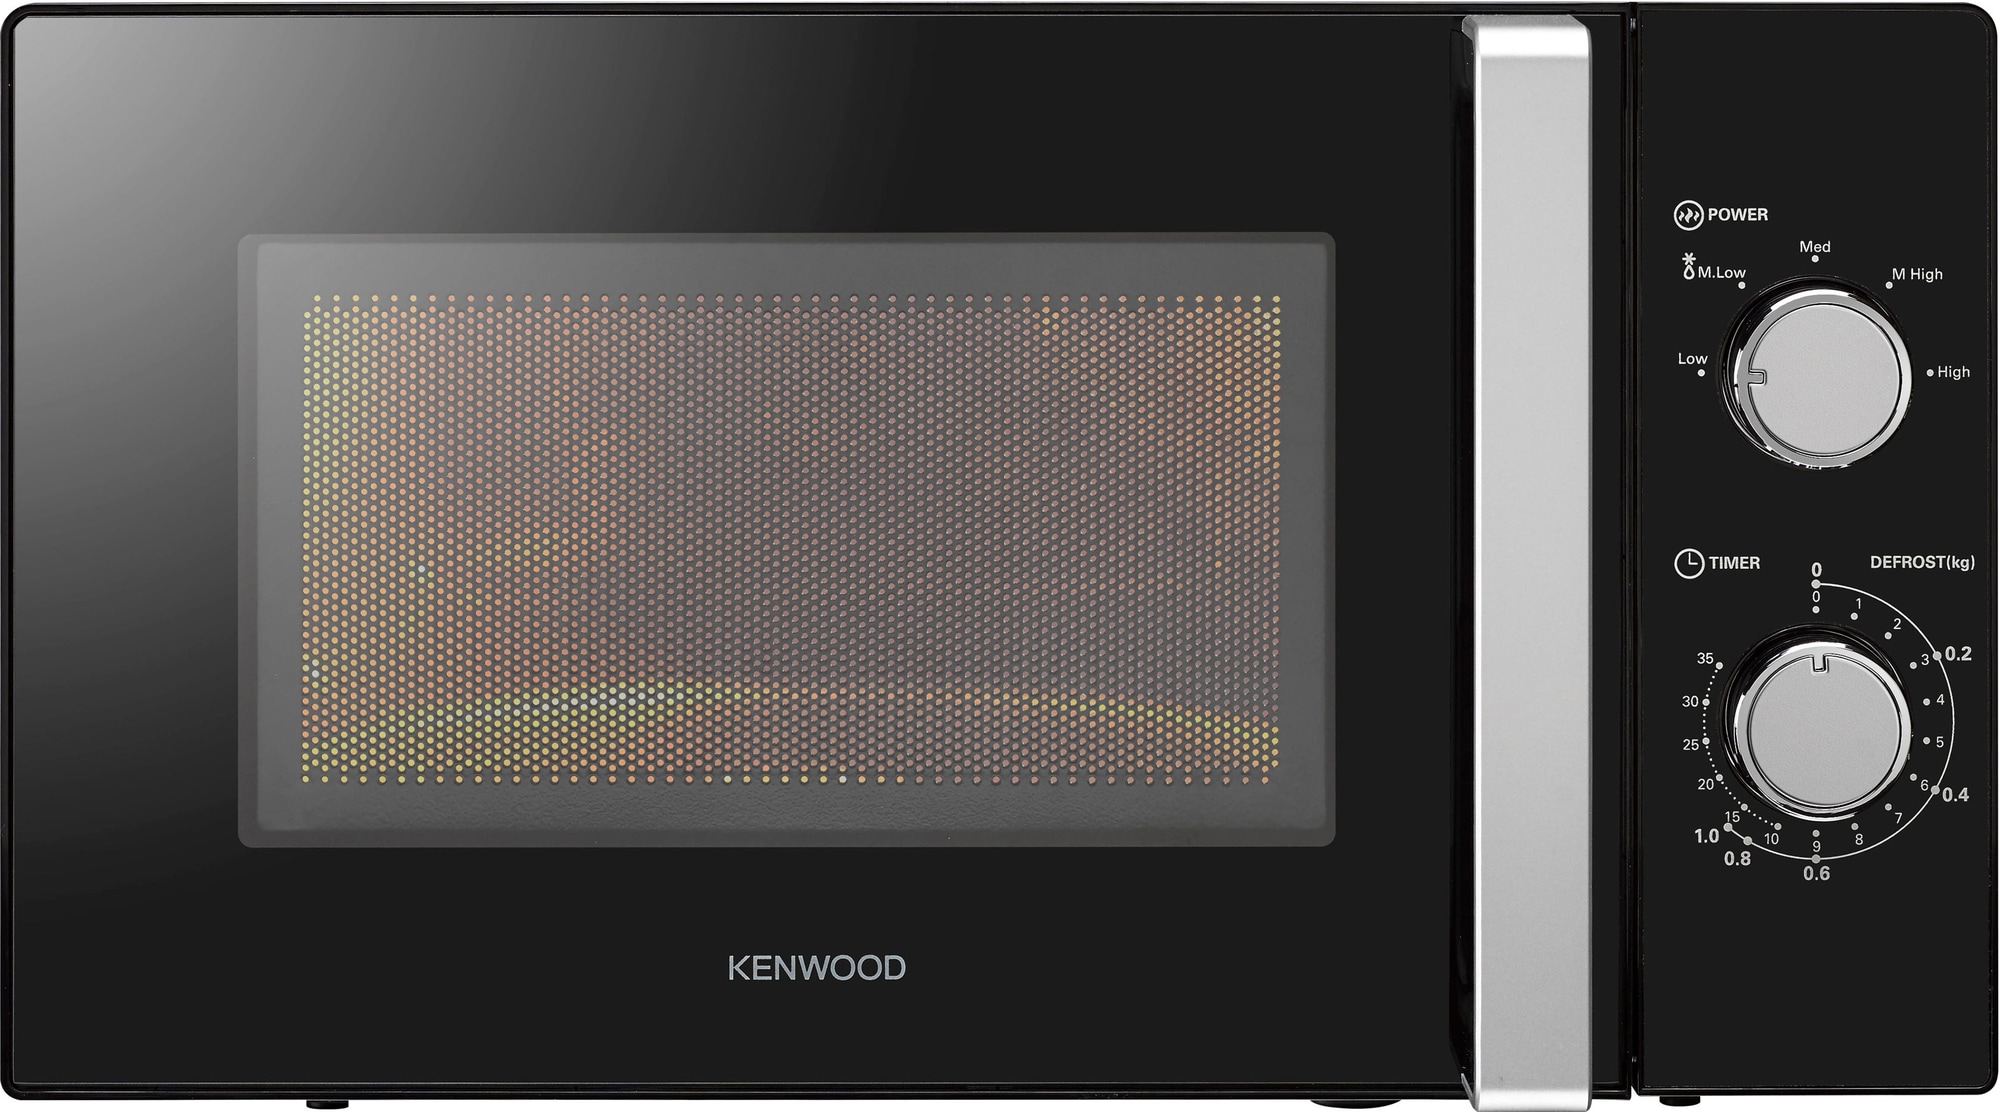 Kenwood mikroovn K17MSB21E (sort) | Elgiganten